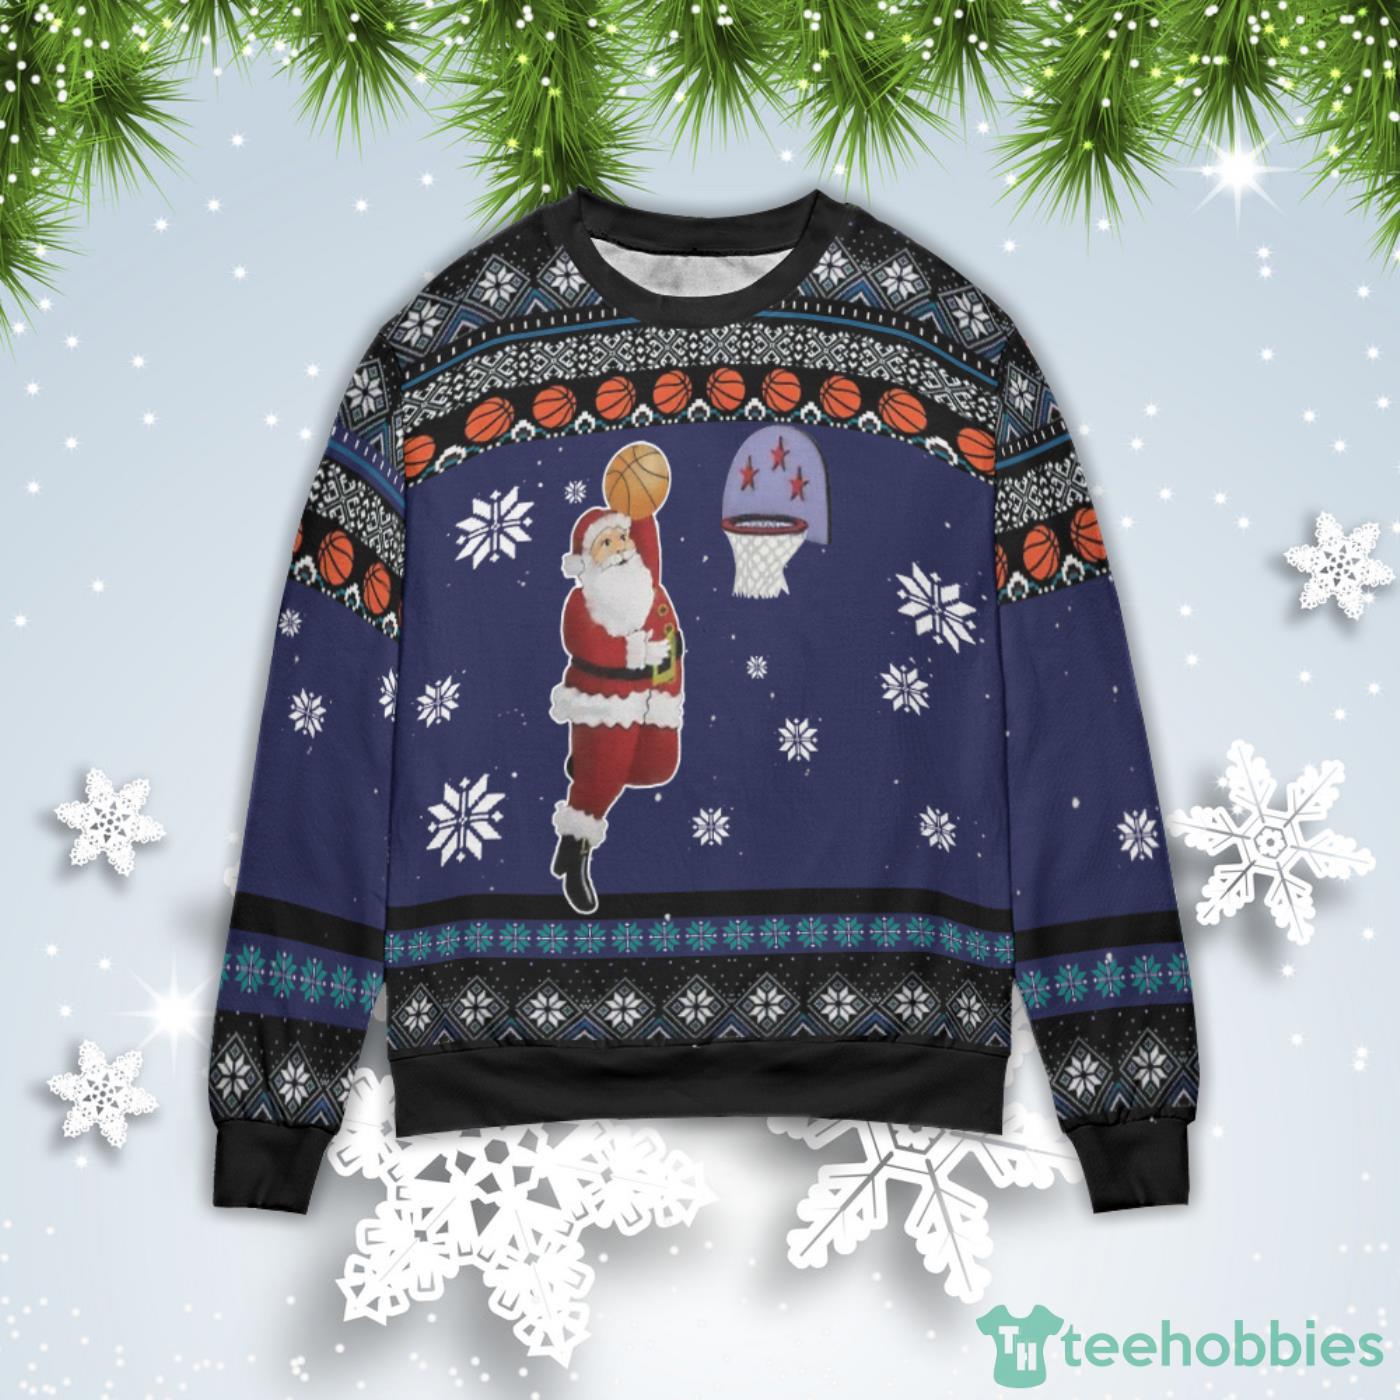 Christmas Gift Boston Celtics Basketball Season Ugly Christmas Sweater